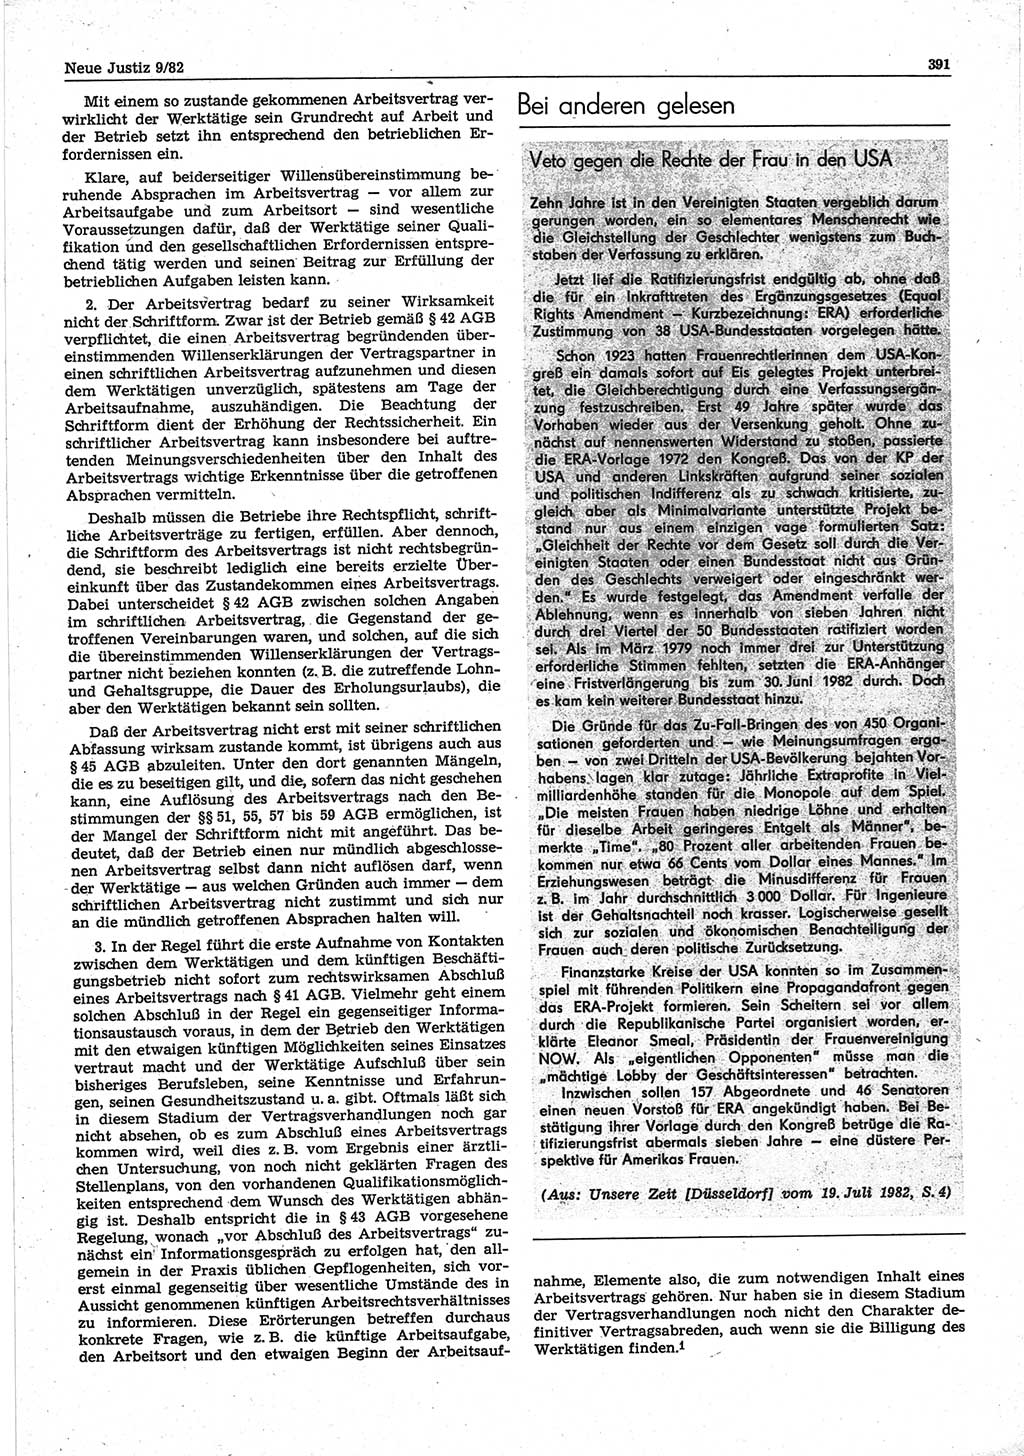 Neue Justiz (NJ), Zeitschrift für sozialistisches Recht und Gesetzlichkeit [Deutsche Demokratische Republik (DDR)], 36. Jahrgang 1982, Seite 391 (NJ DDR 1982, S. 391)